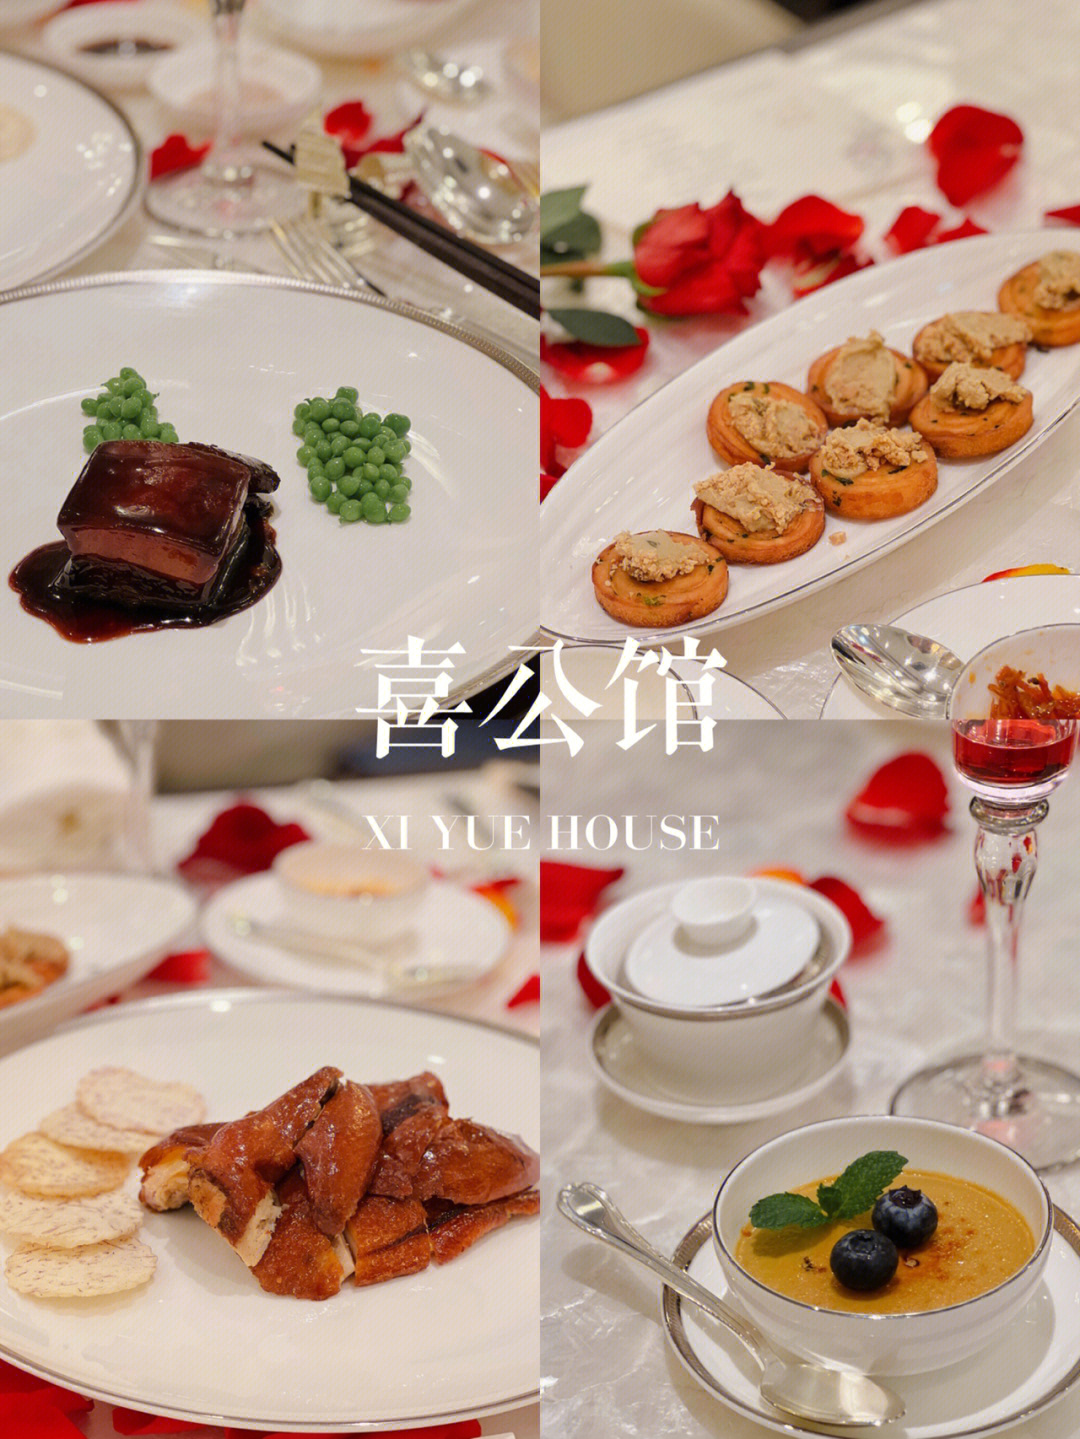 来自杭州中餐天花板——98杭州唯一的黑珍珠三钻餐厅98杭州四季